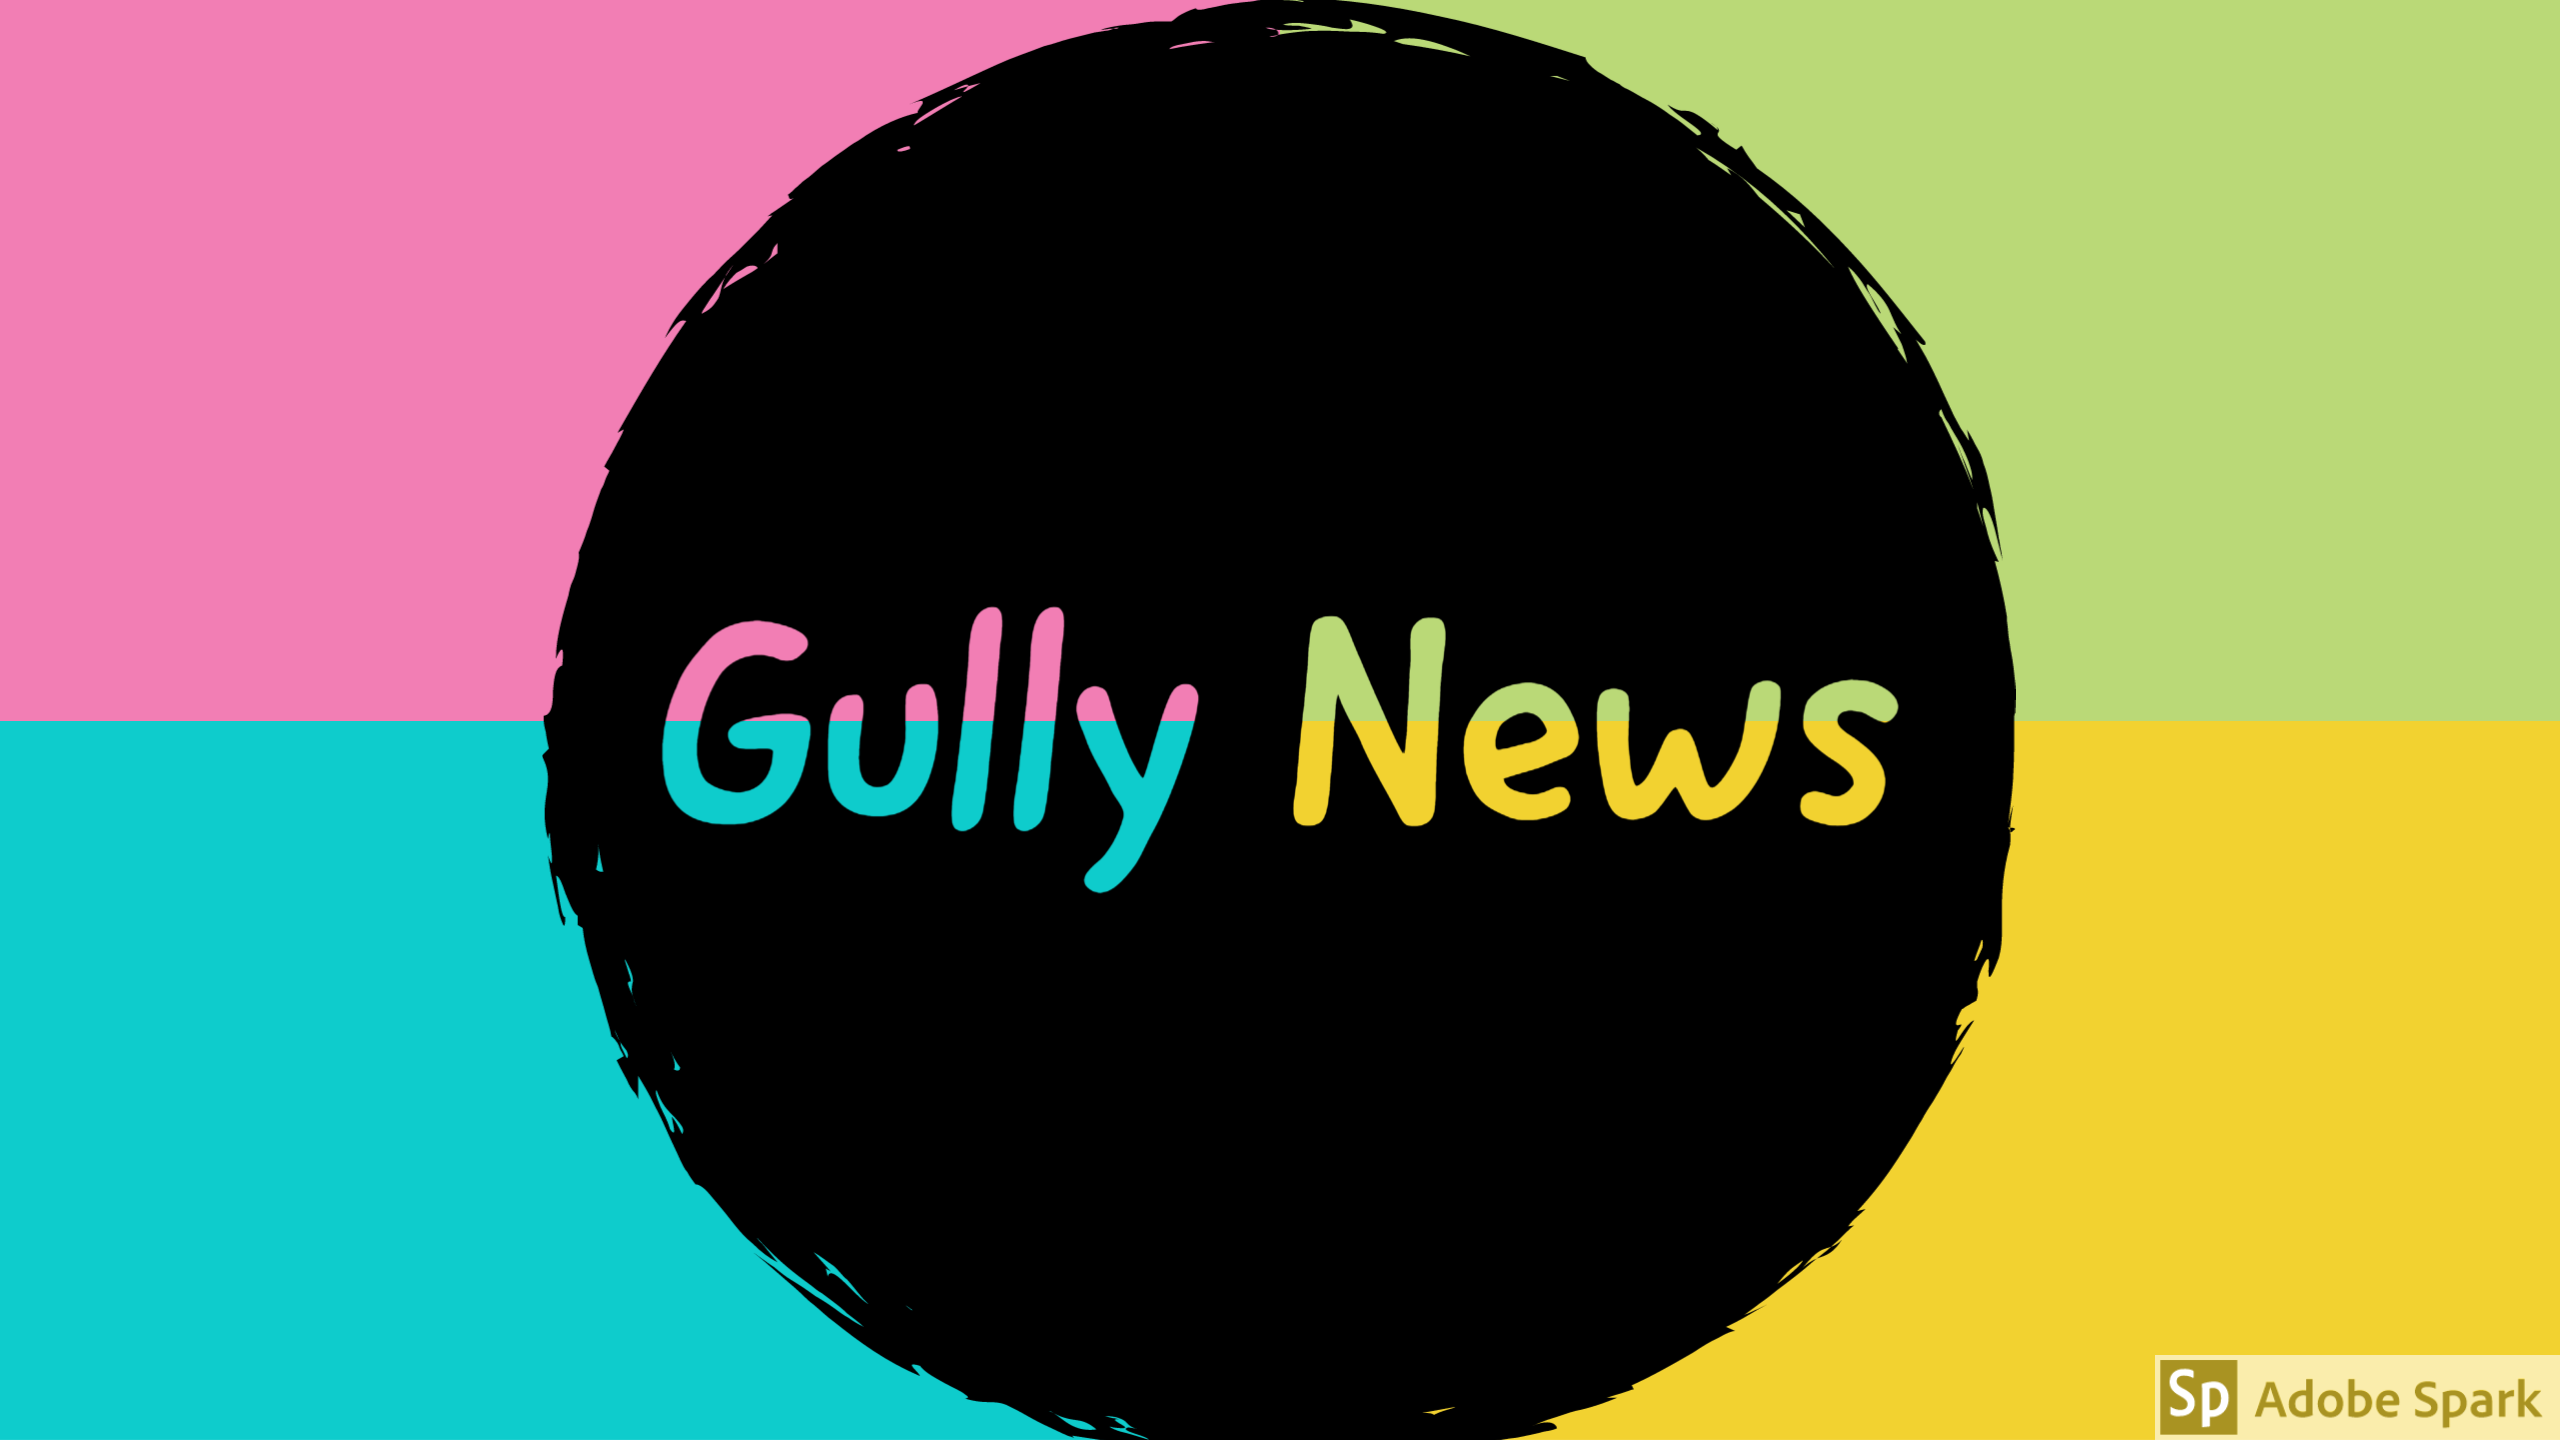 Gully News